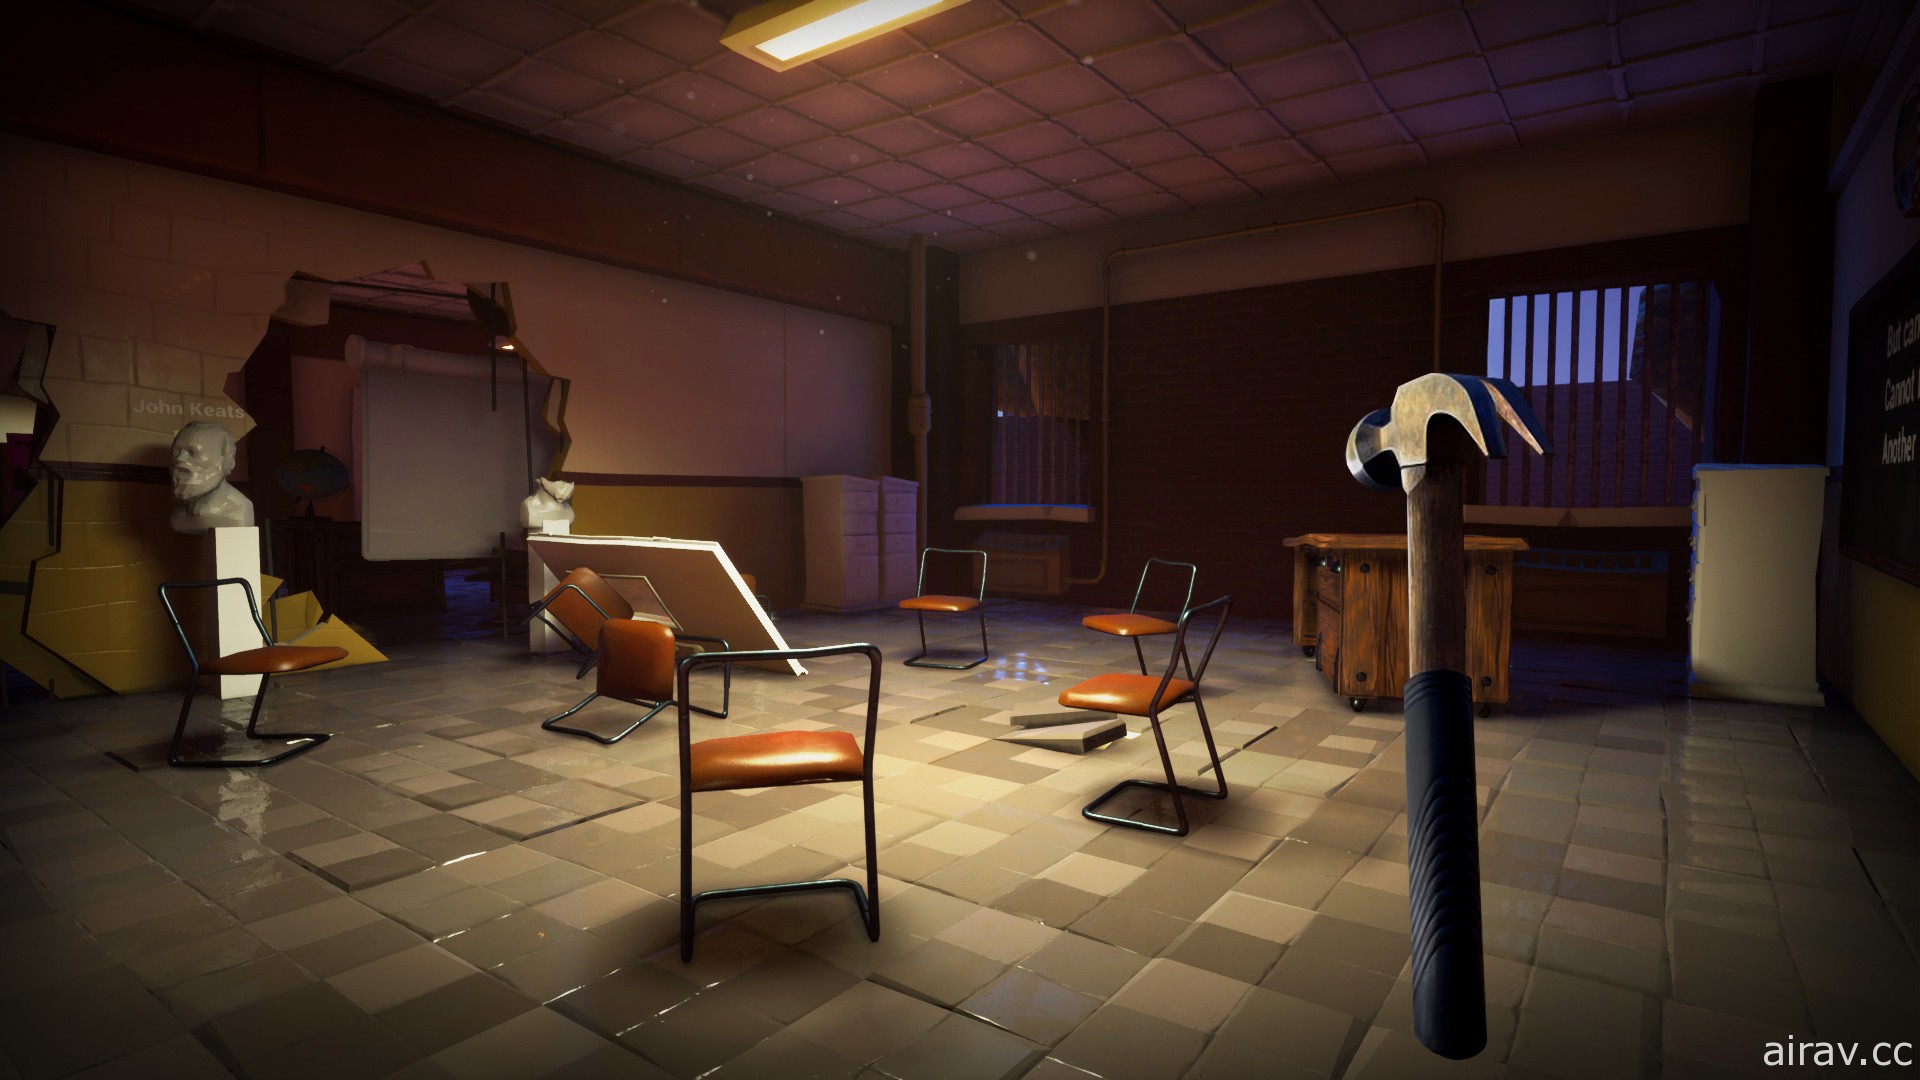 匿踪恐怖游戏《坟木高中》21 日展开抢先体验 逃离不断变化的迷宫与老师